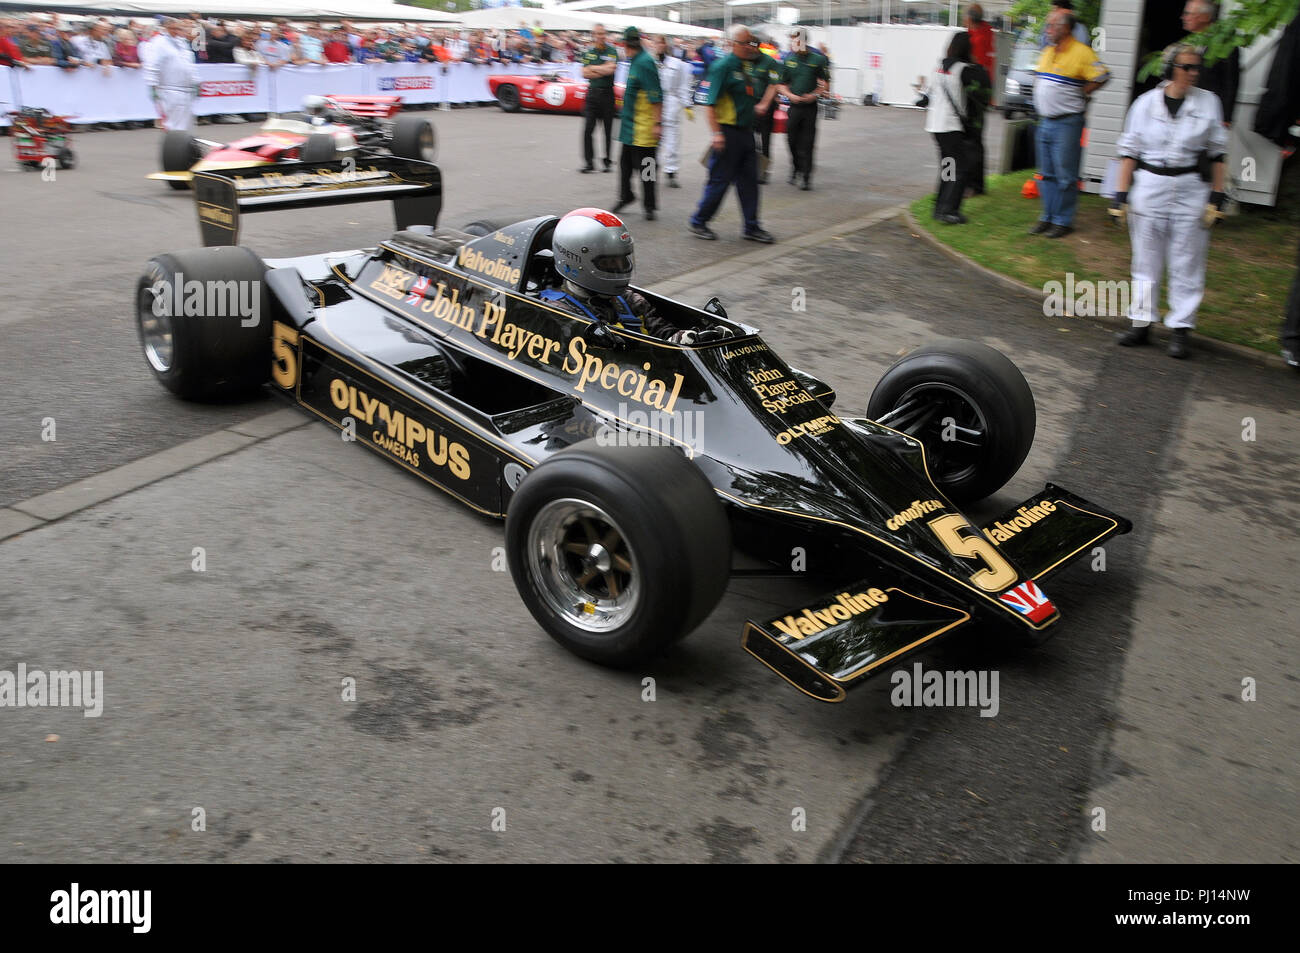 Classic Mario Andretti Lotus 79 John Player Special Formula 1 Grand Prix au Goodwood Festival of Speed, FOS. Se déplacer de la zone de la fosse Banque D'Images